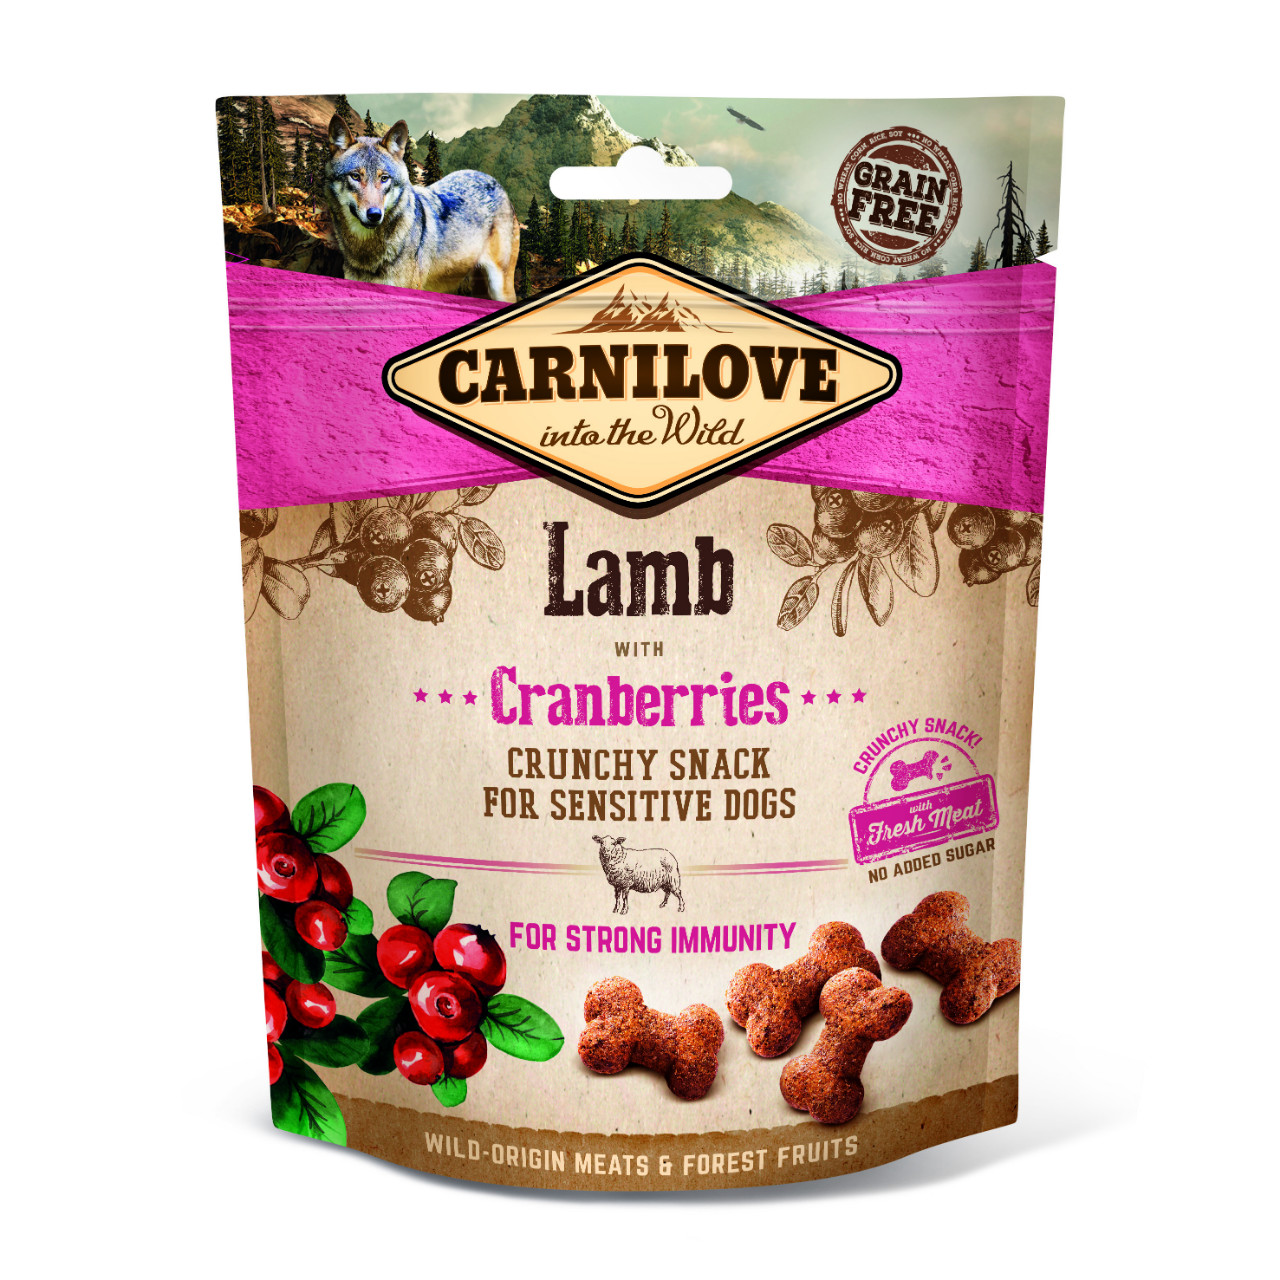 Adult Crunchy Snack - Lamm mit Cranberries, 200g